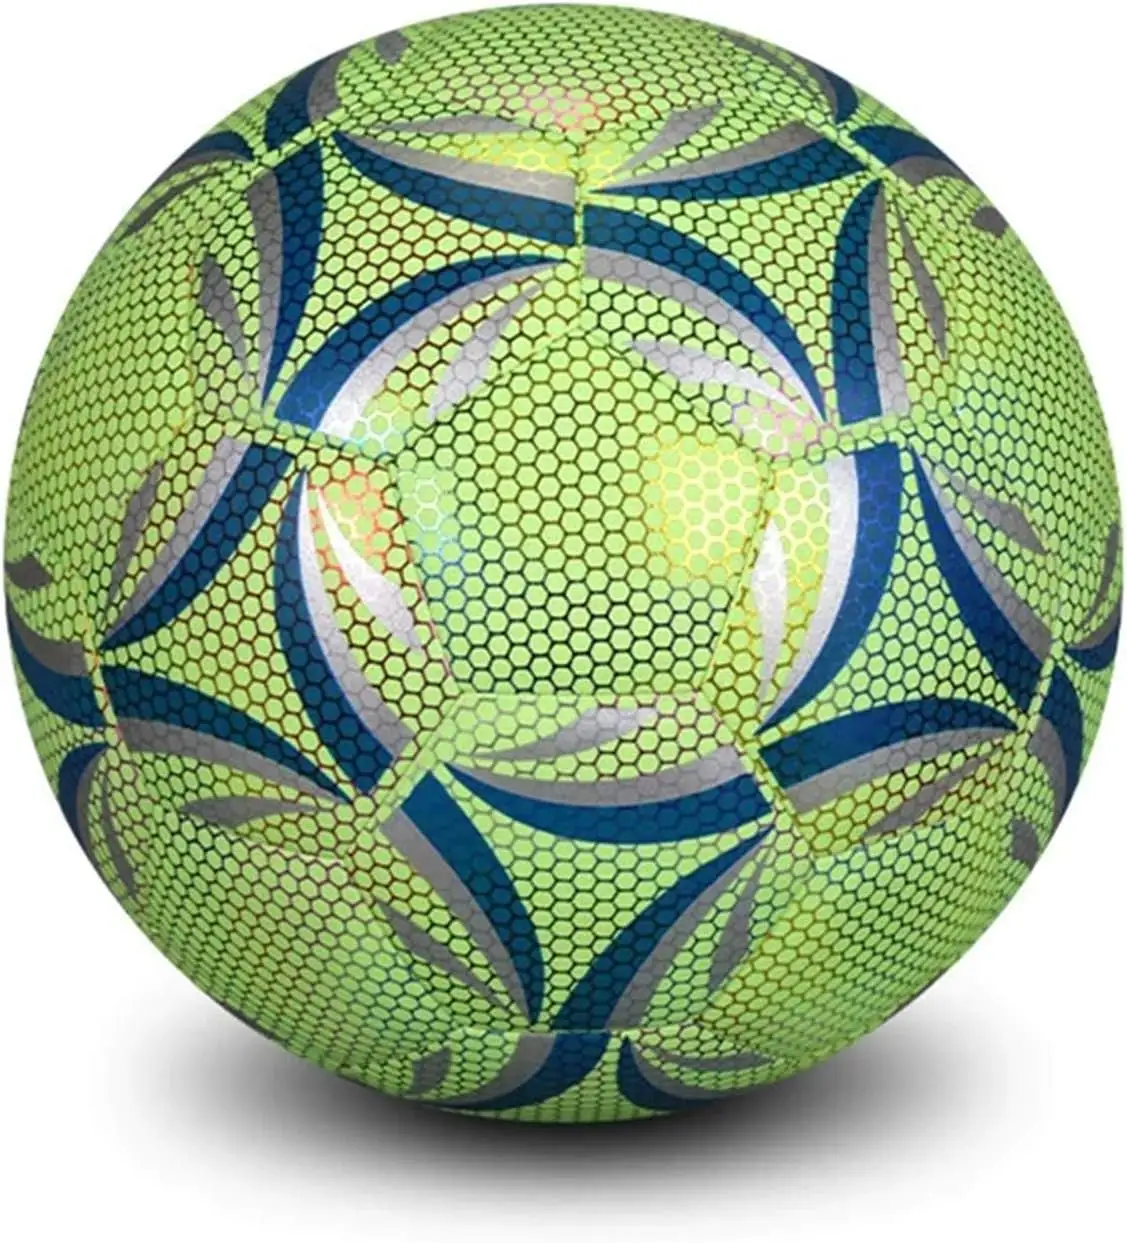 Nuevo balón de fútbol oficial 2023, nuevo balón de fútbol para hombres, pelotas personalizadas para jóvenes de alta calidad al mejor precio